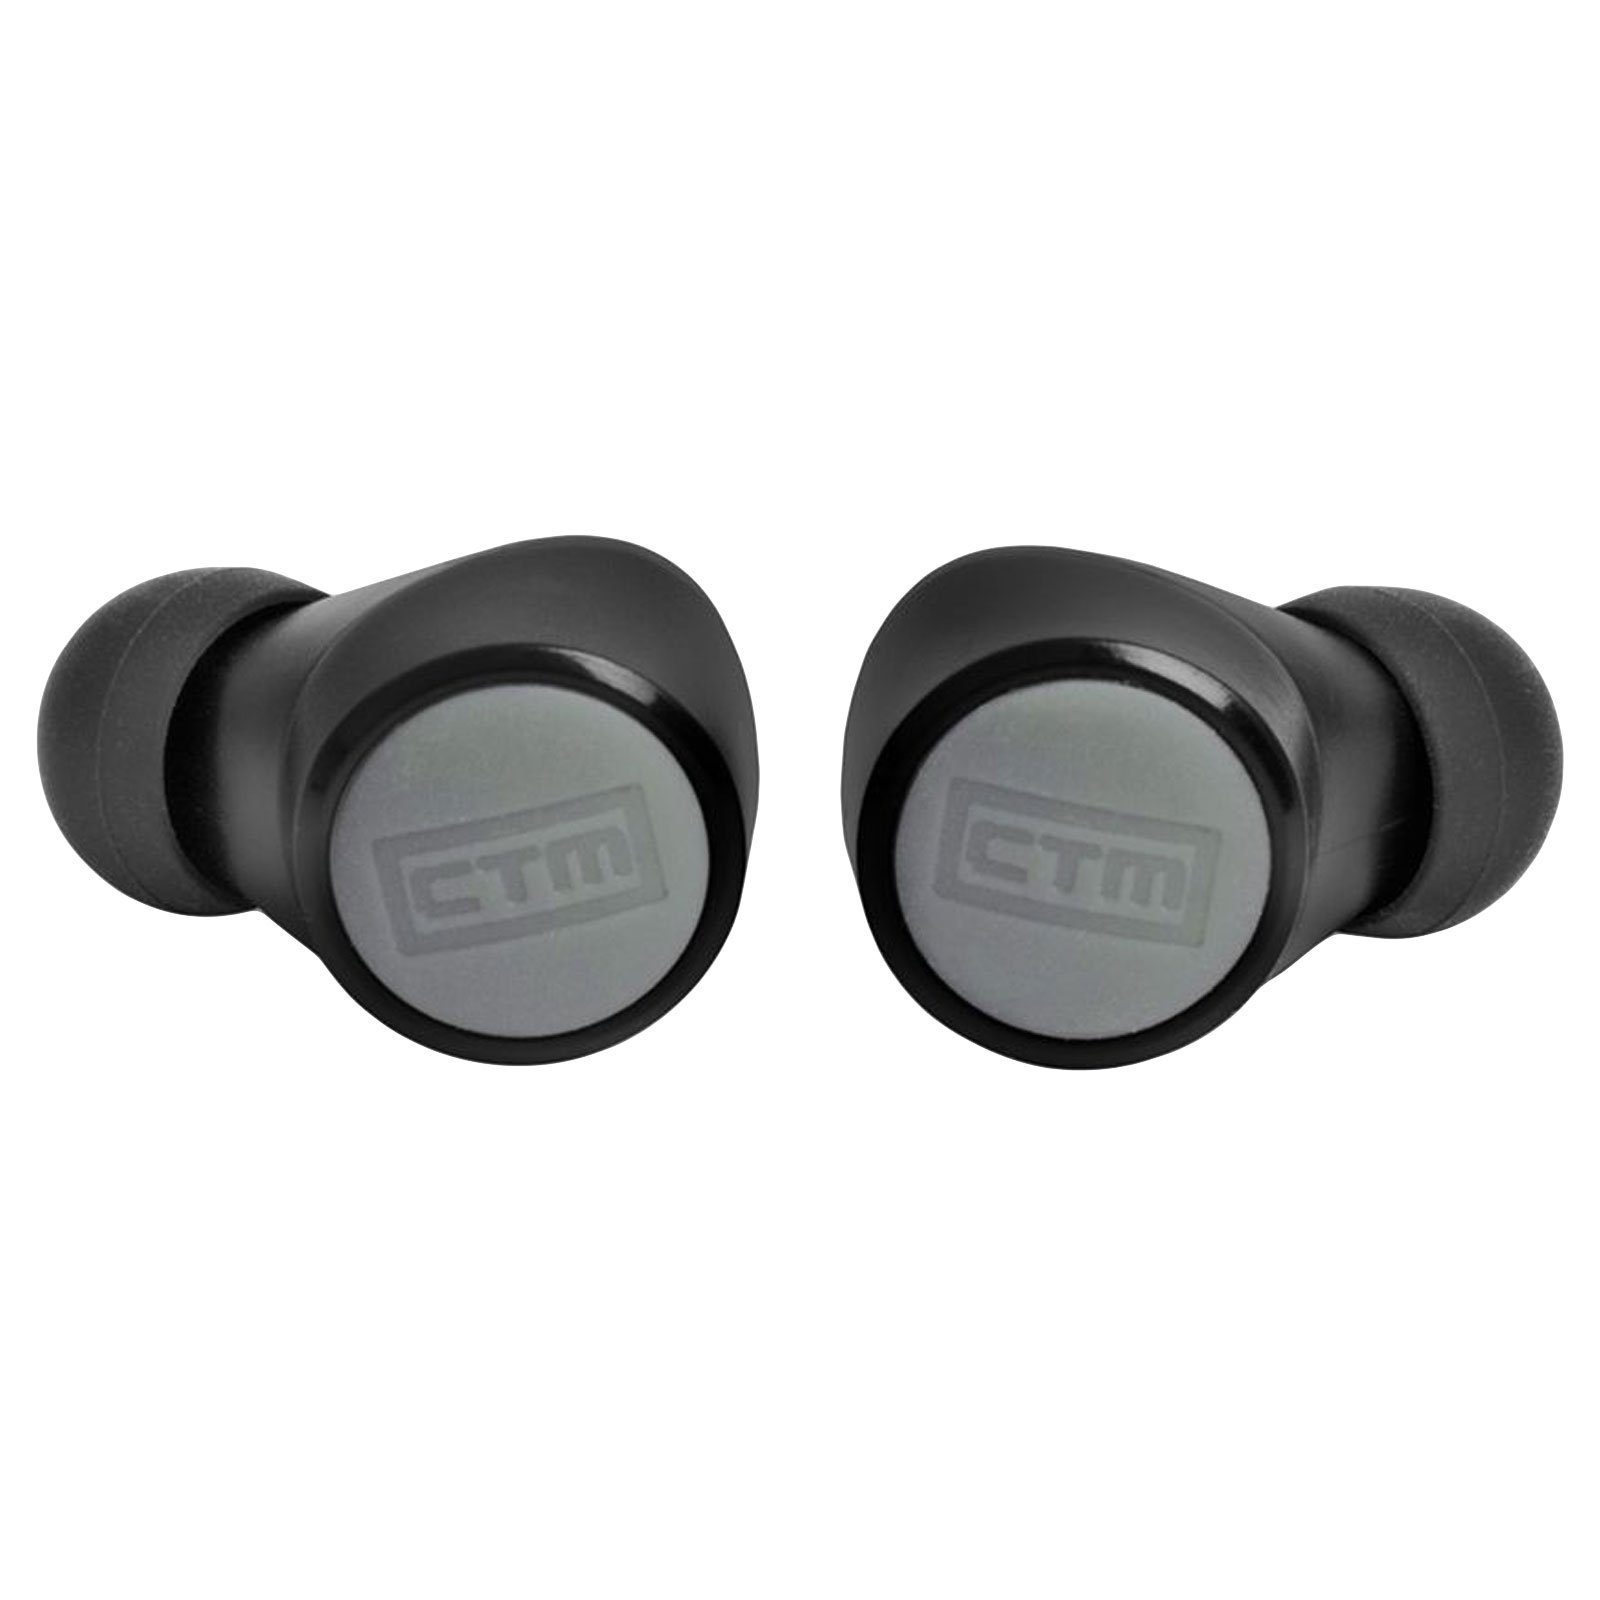 Sprachassistenten, In-Ear CTM Audio Bluetooth) P2 Kopfhörer Anrufsteuerung, und Explore (Musik- CTM Bluetooth In-Ear-Kopfhörer